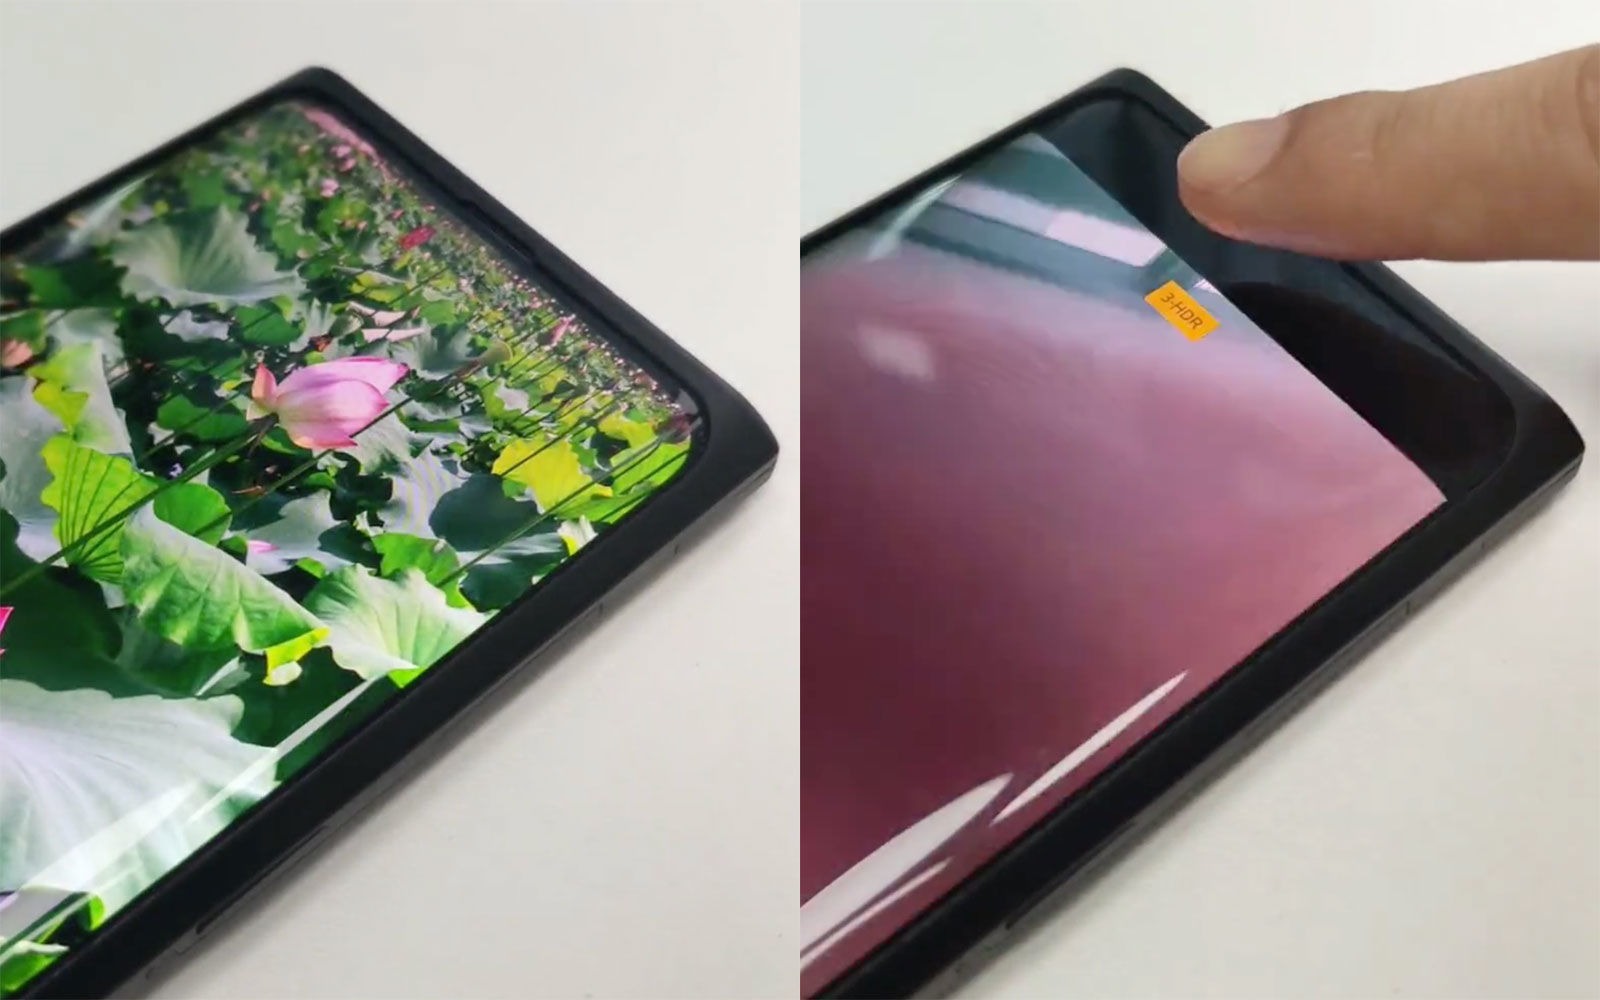 Lộ video thực tế smartphone Oppo mới với camera ẩn dưới màn hình